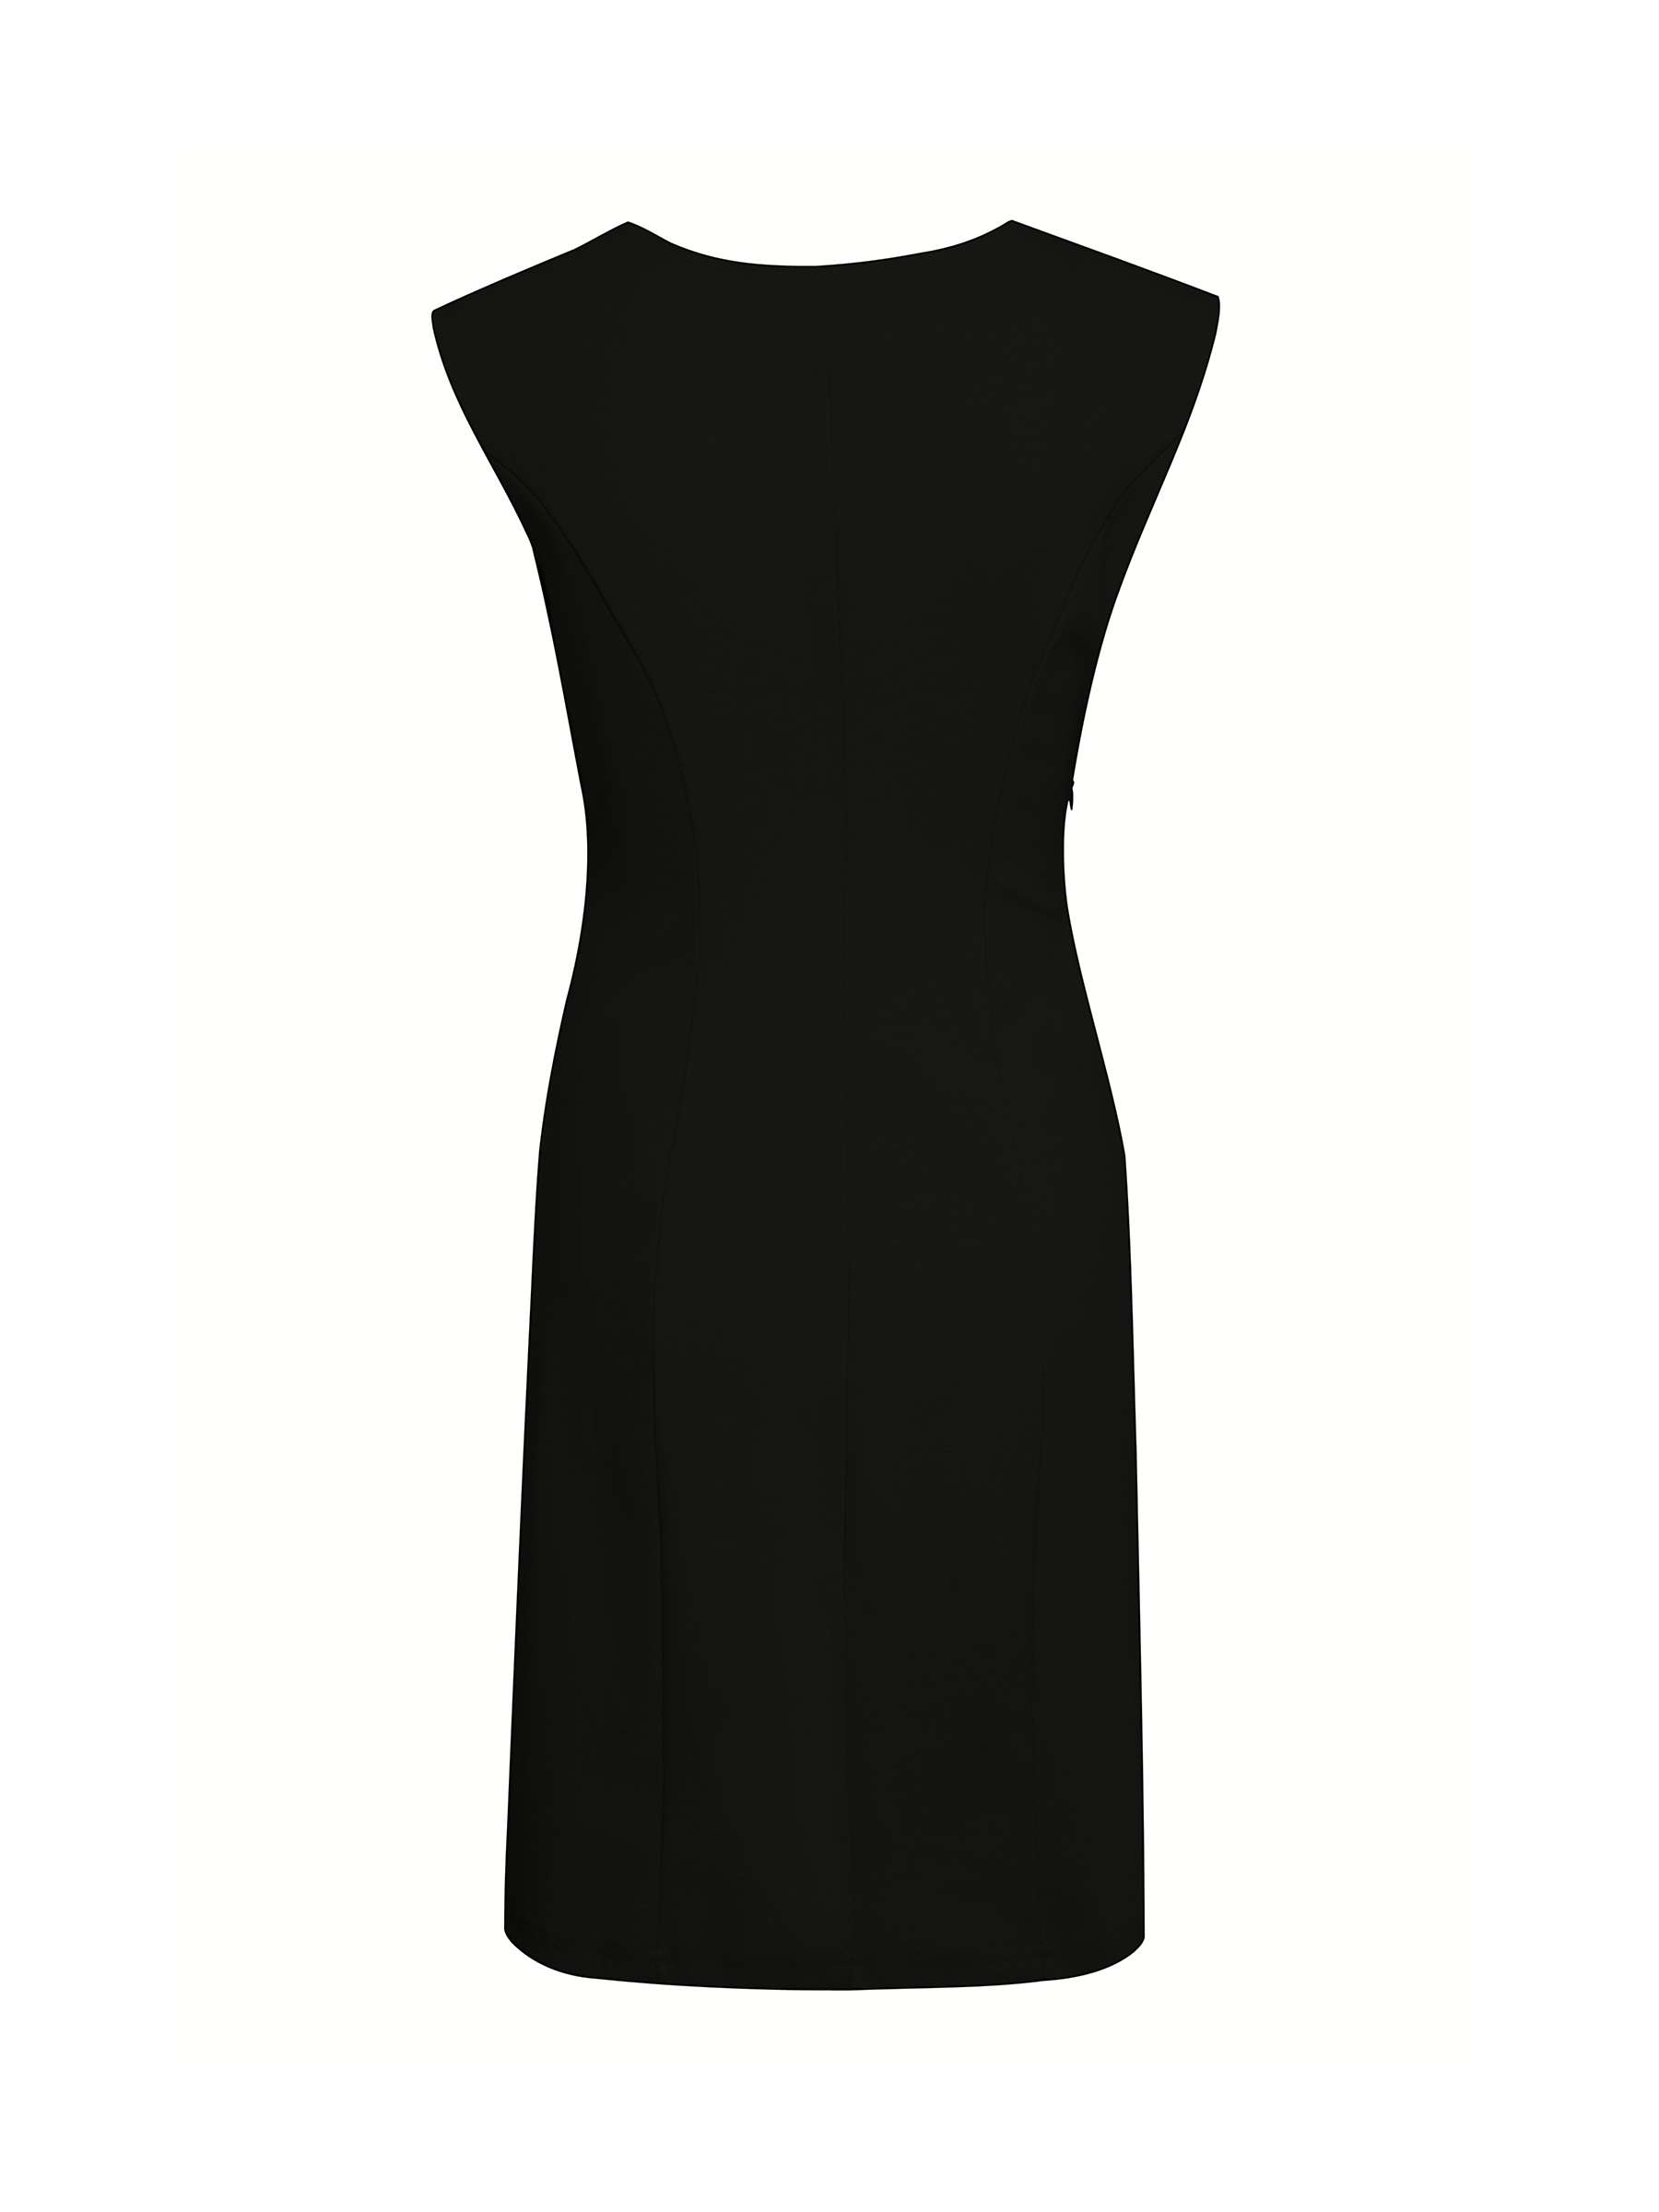 Buy KAFFE India Cocktail Dress, Black Deep Online at johnlewis.com